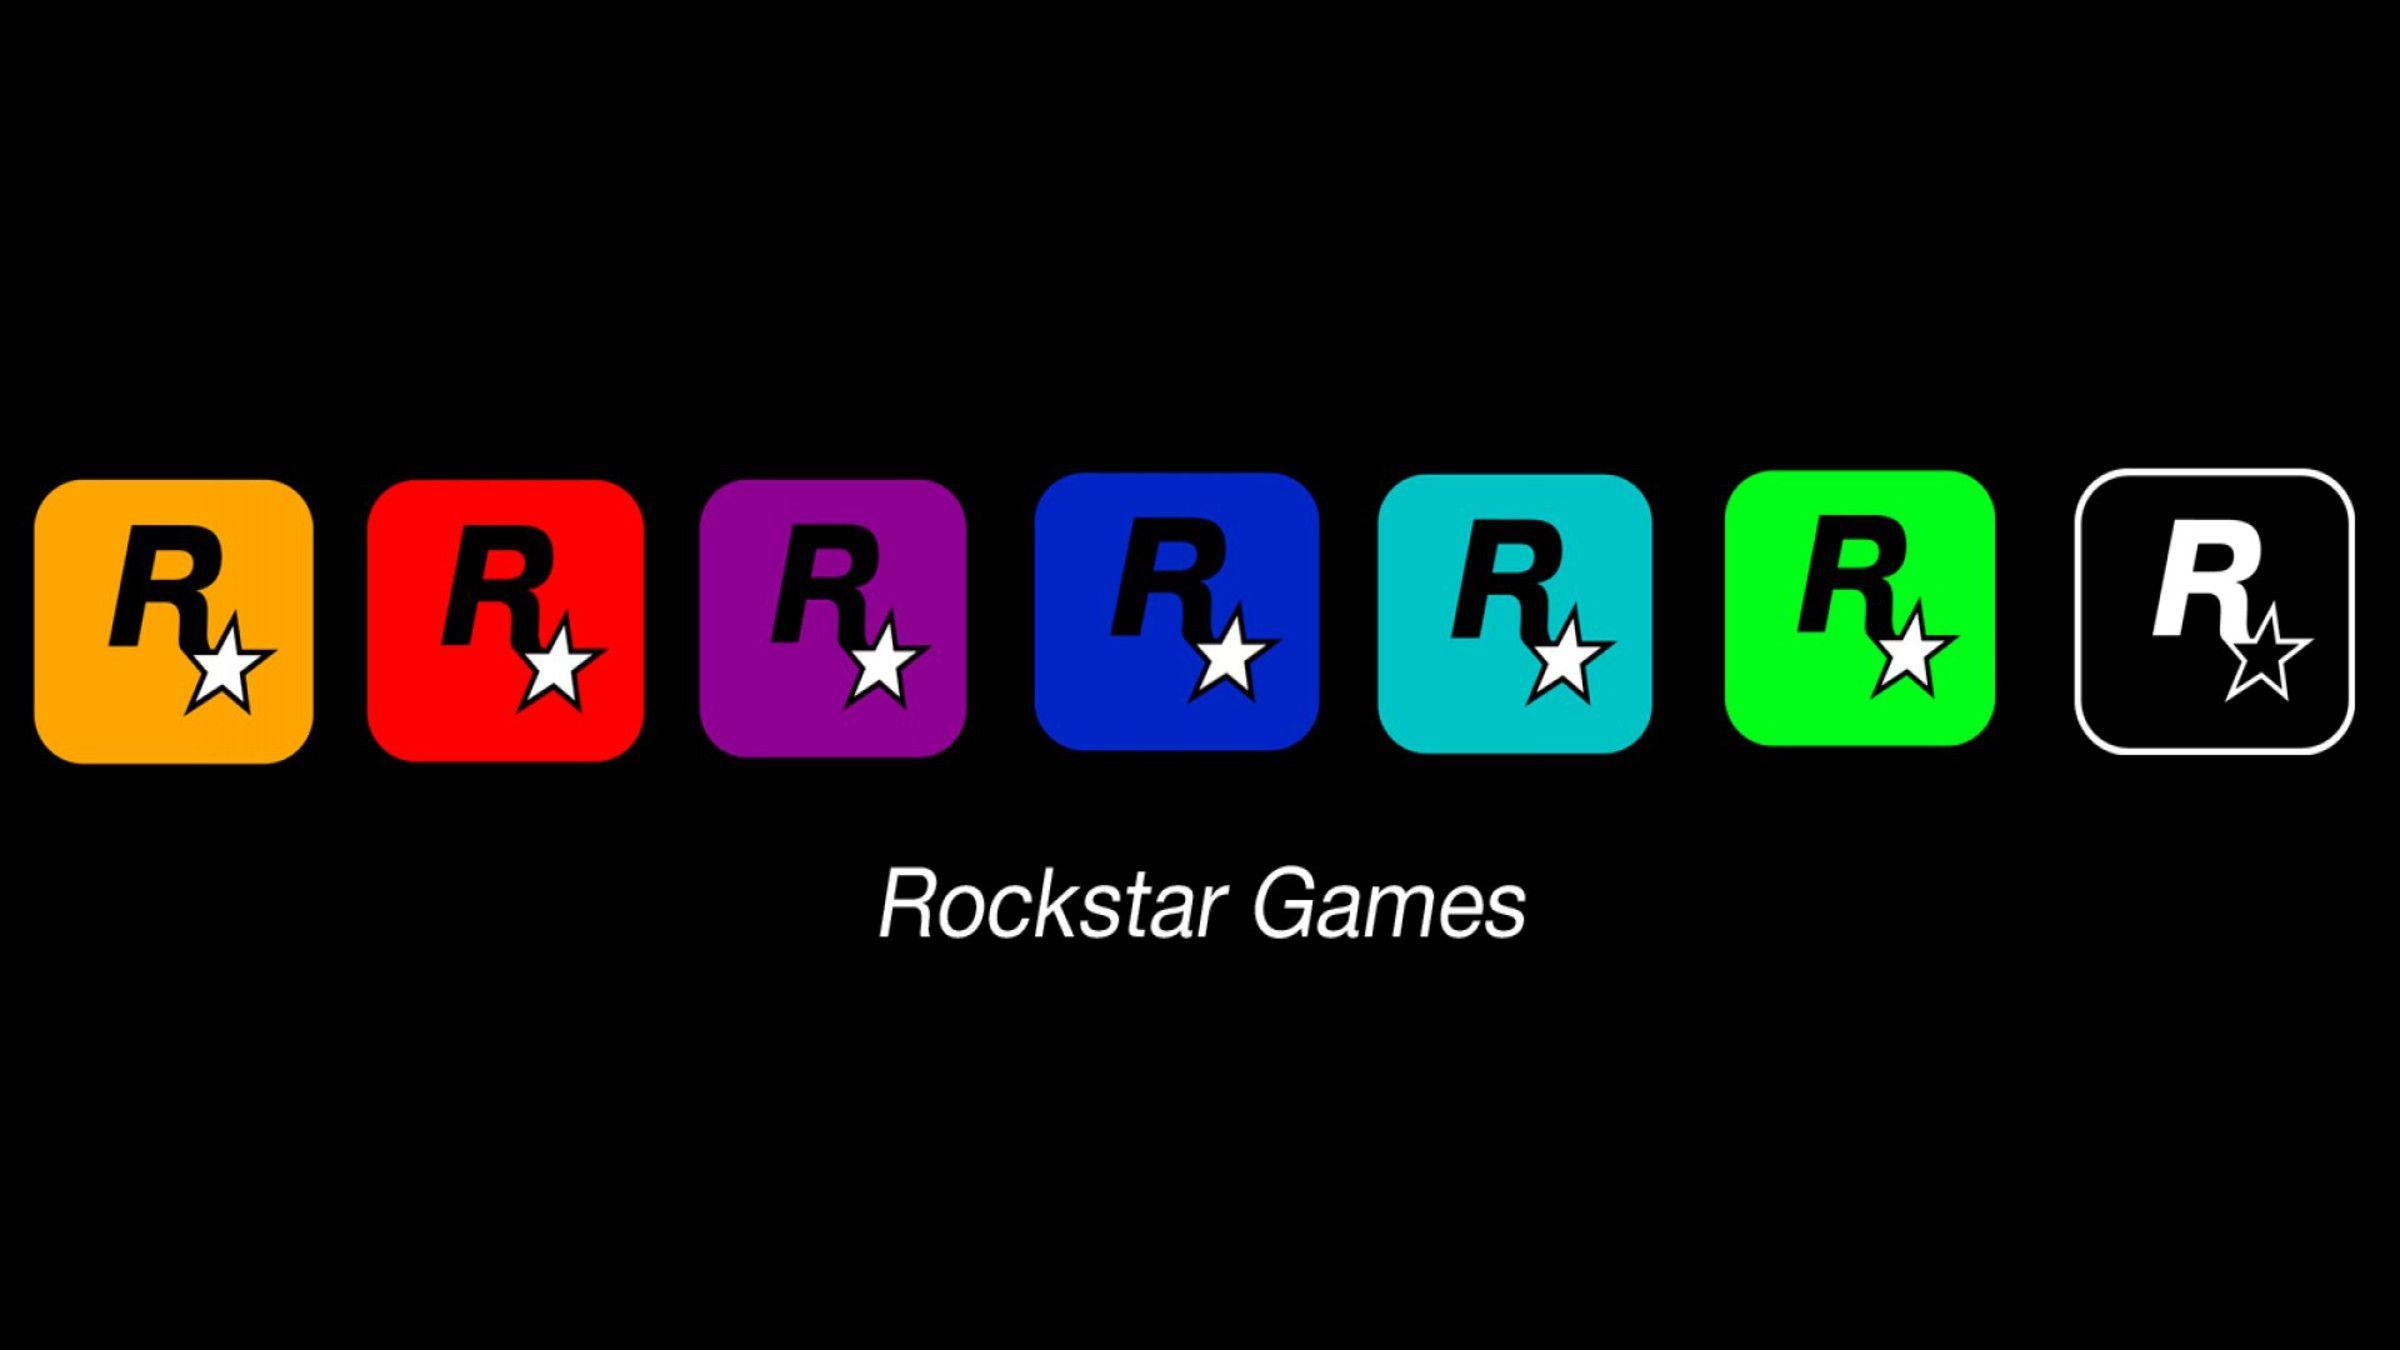 Rockstar games logos wallpaper. PC